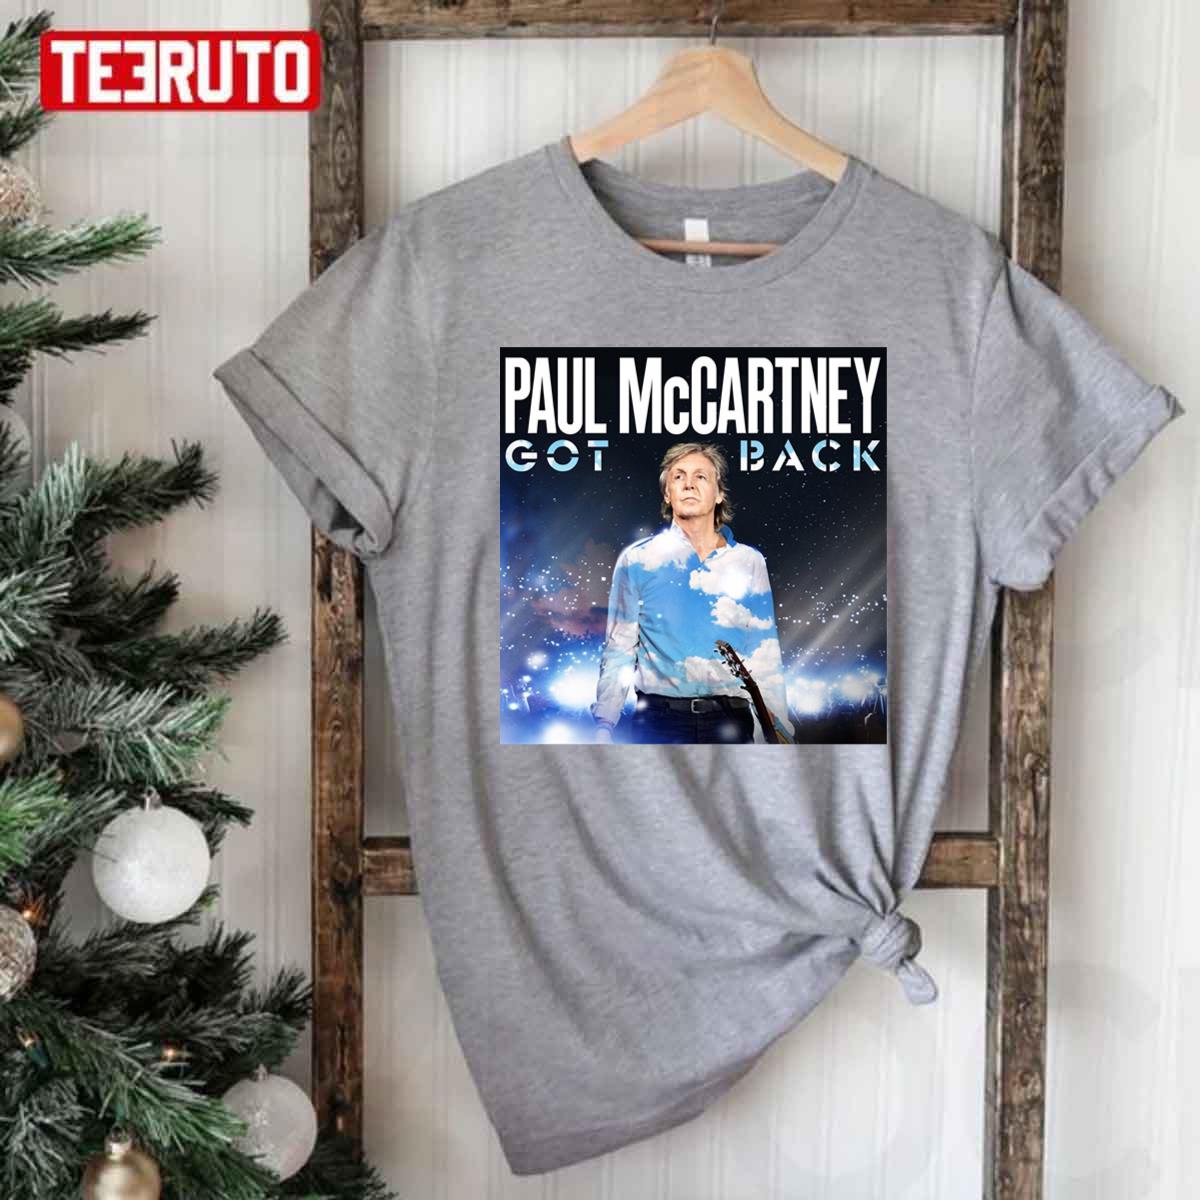 Paul McCartney Summer Tour Got Back Unisex T-Shirt